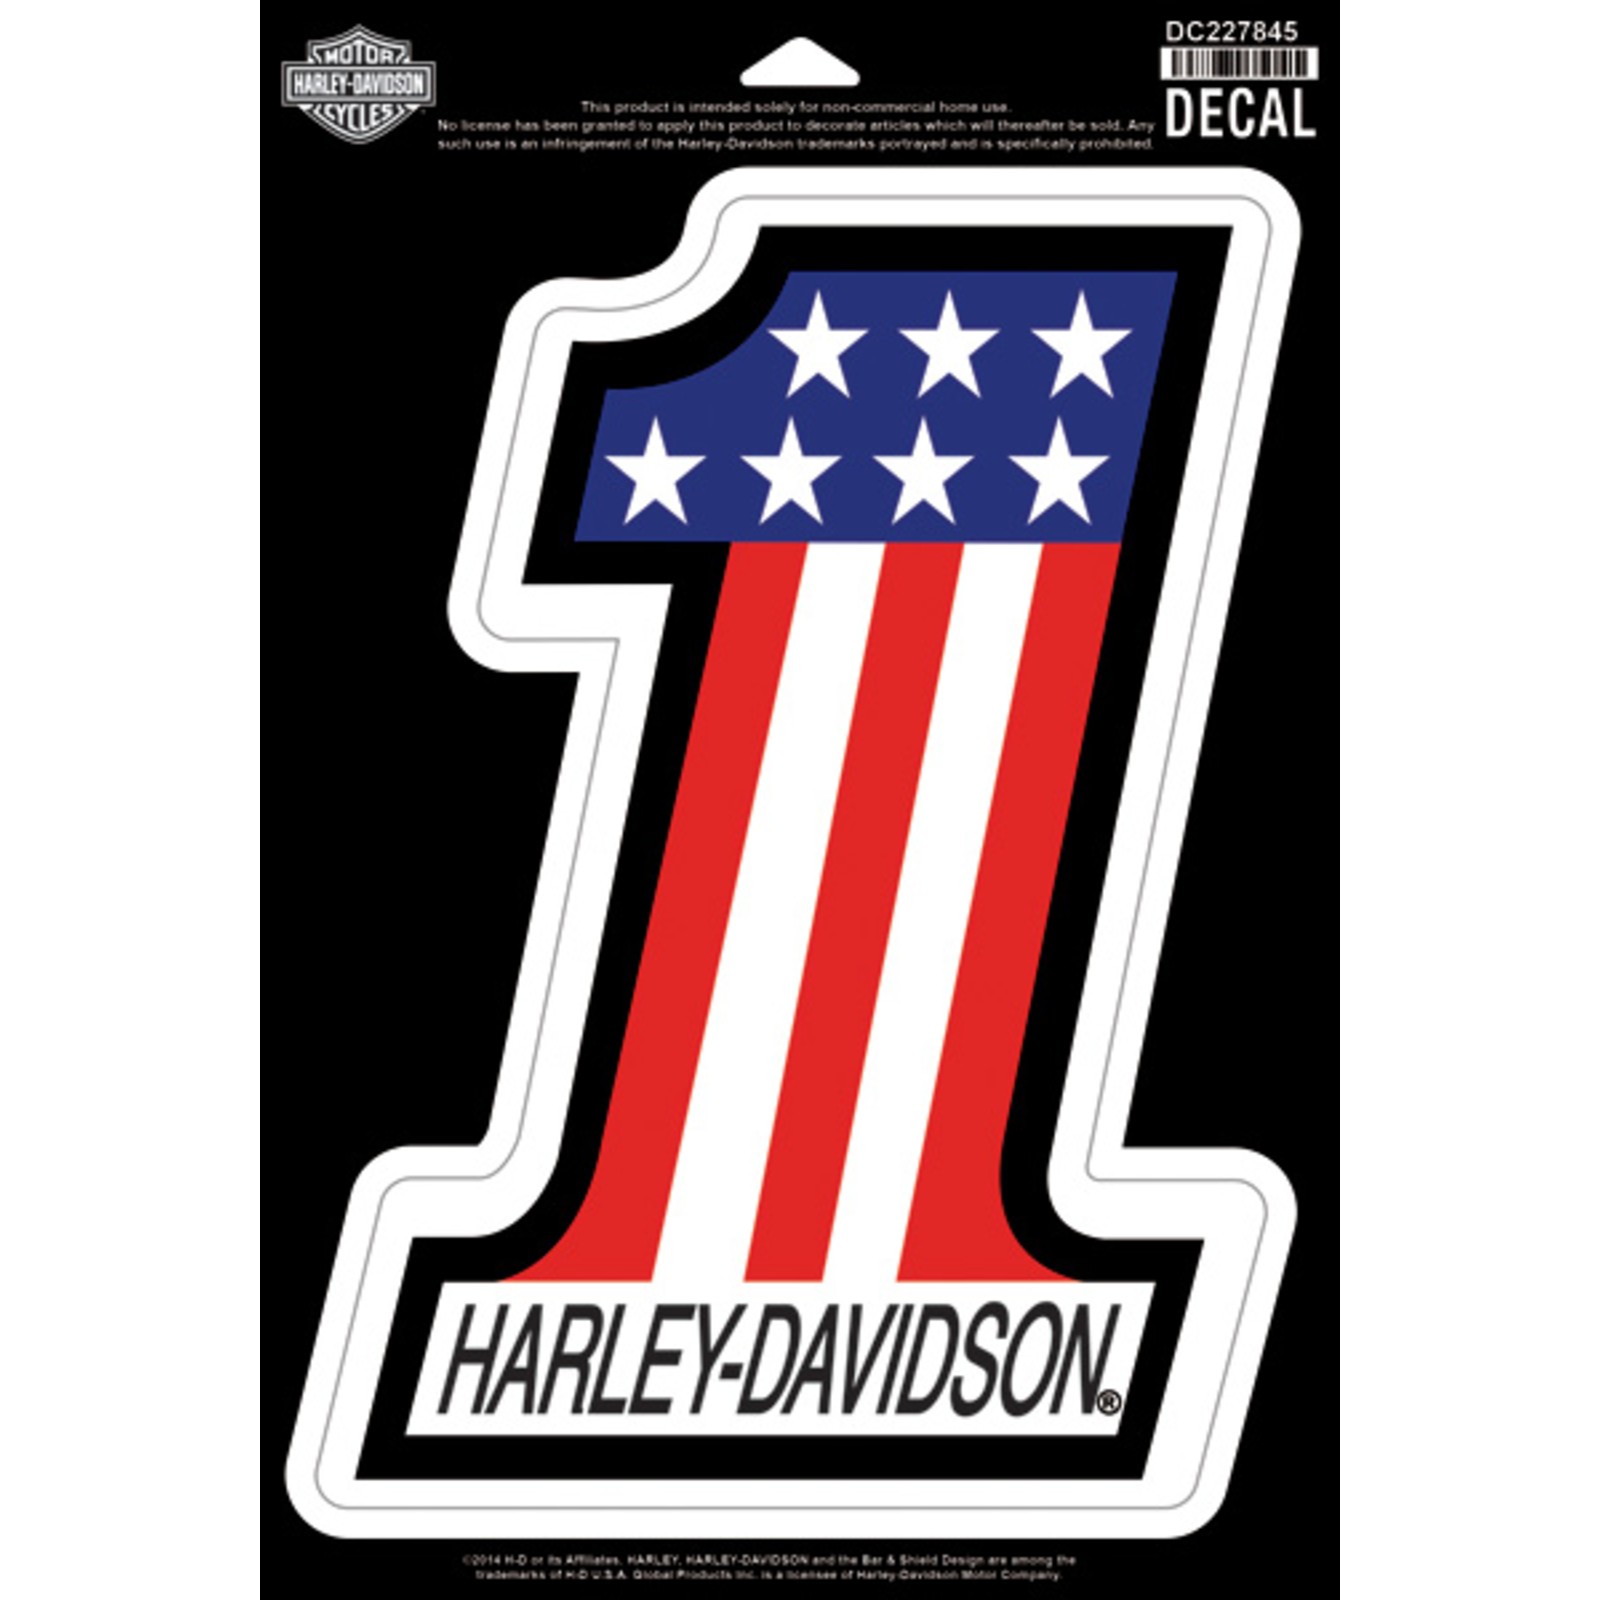 Harley Davidson Sticker Metall Chrom,Rund 70mm groß 